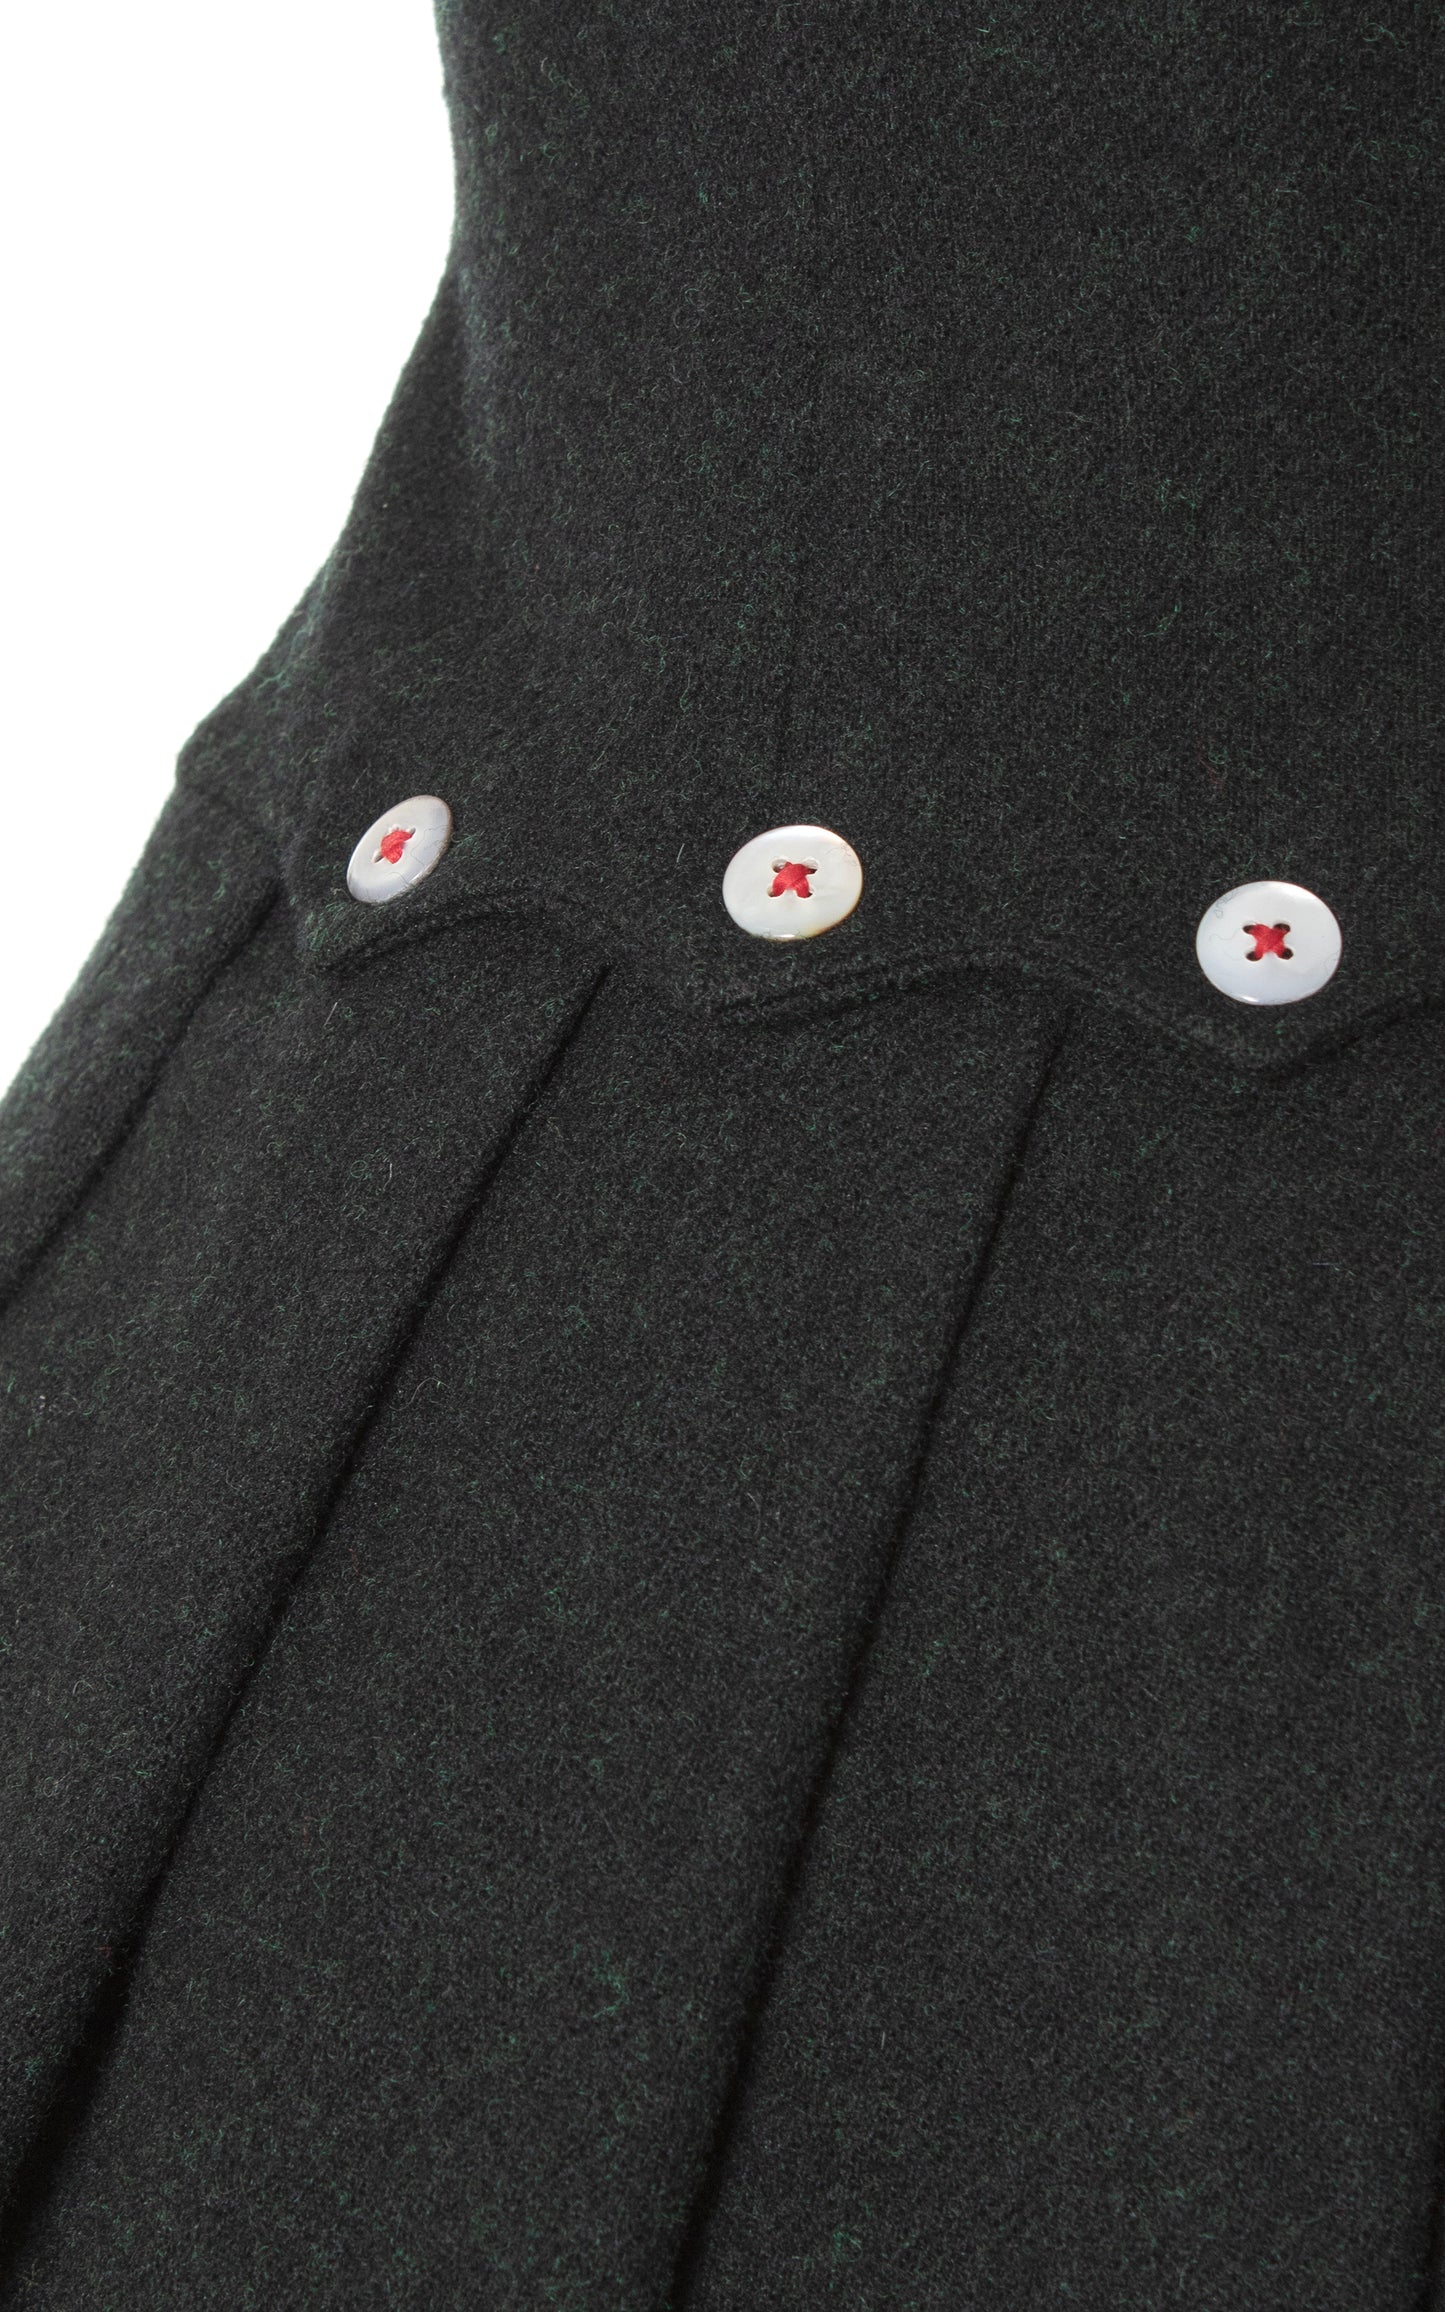 BLV x DEANNA || 1950s Dark Grey Wool Drop Waist Dress | x-small/small